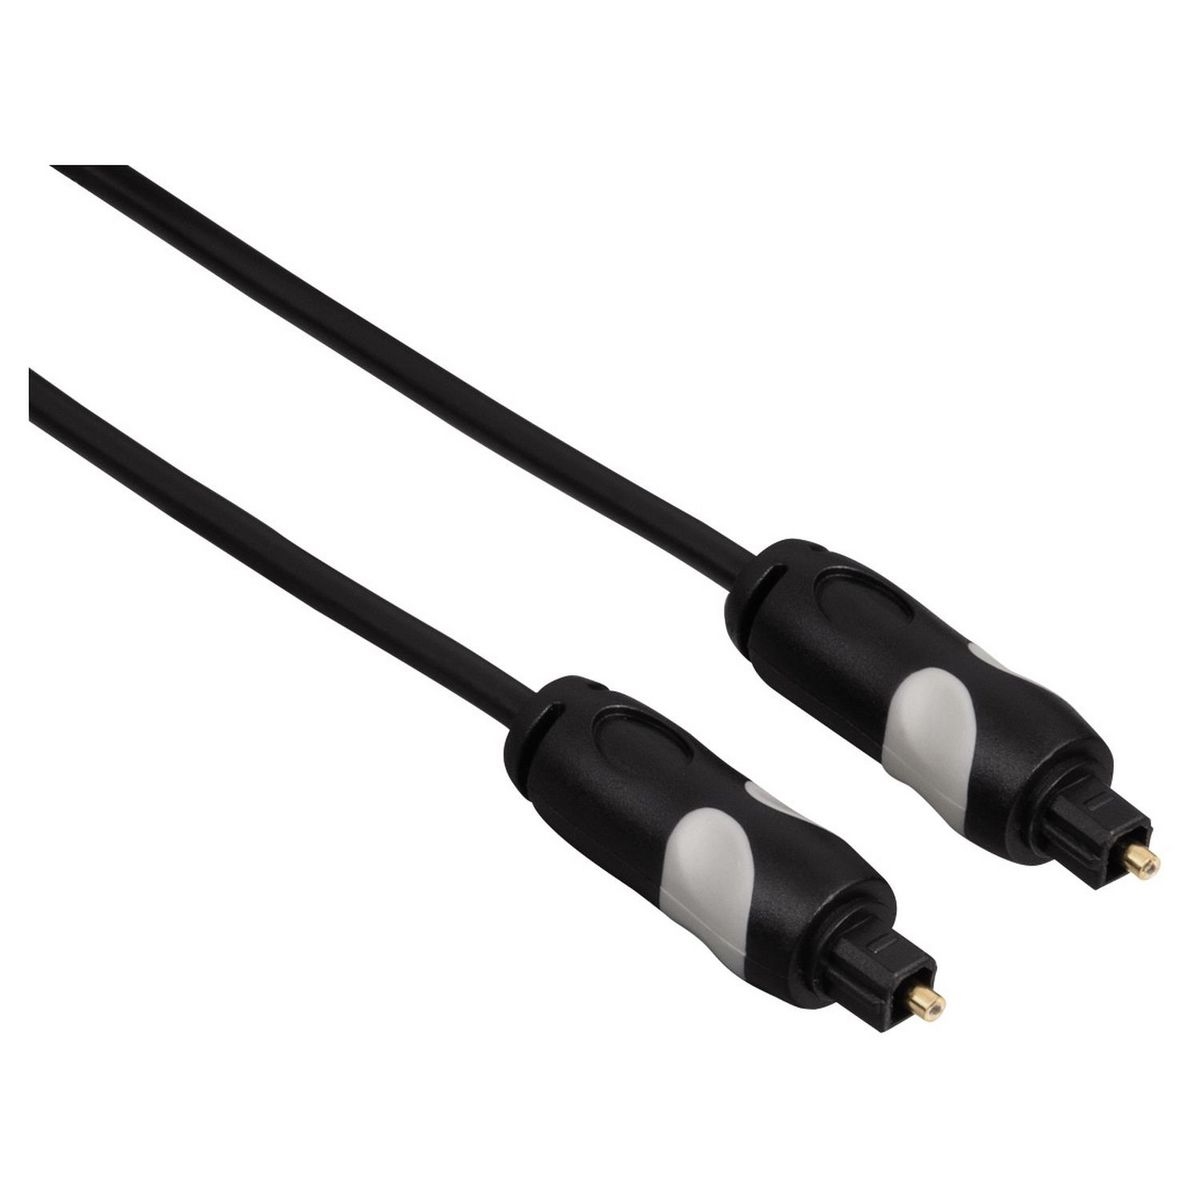 THOMSON Câble audio optique numérique Toslink - 1.5 mètres pas cher 